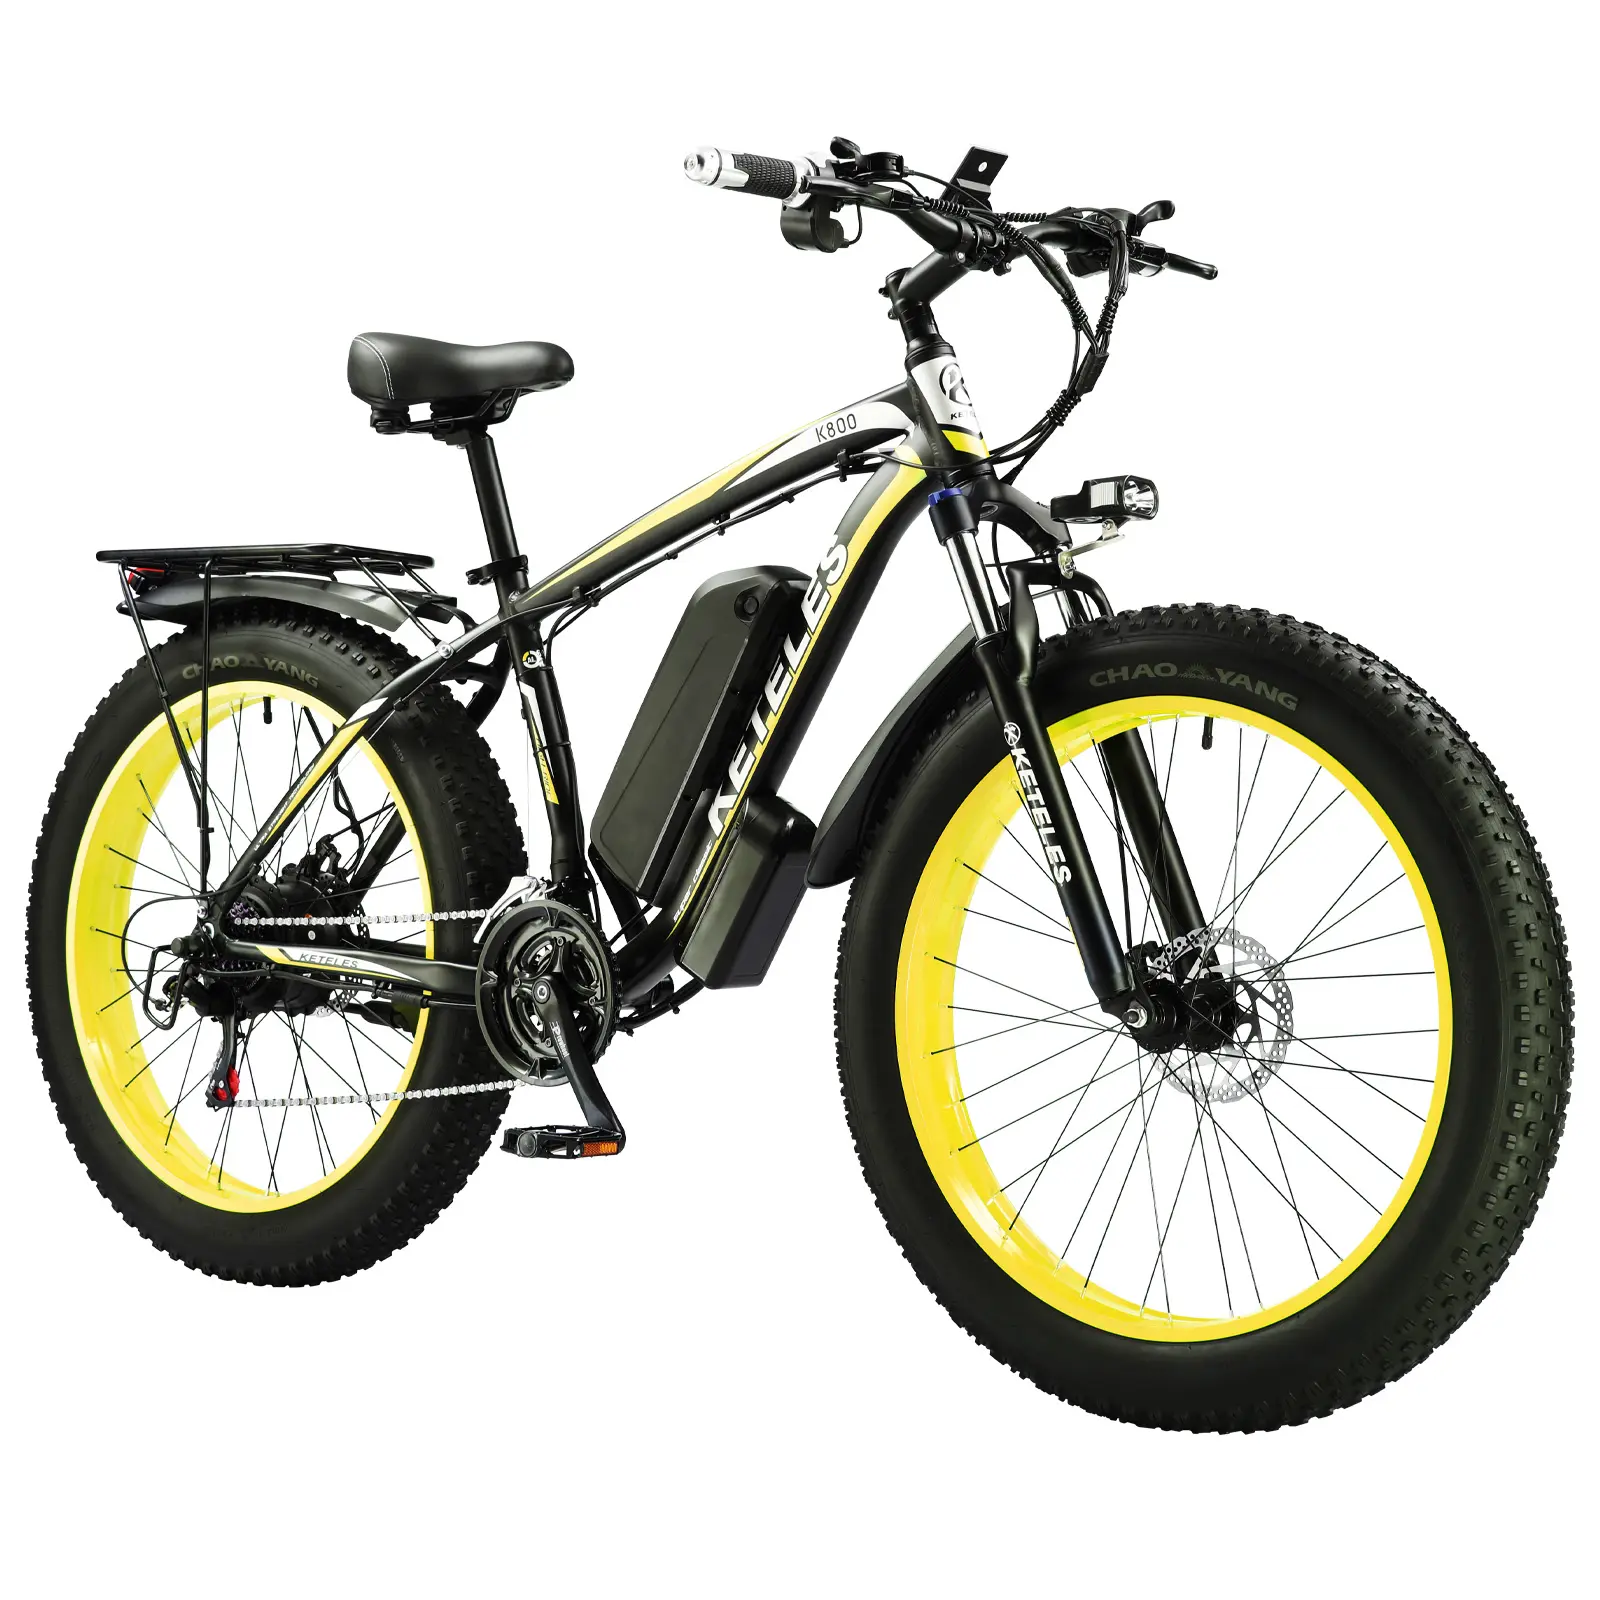 Bicicleta elétrica com motor 1000w 13ah, fat ebike, pneu gordo de 26 polegadas, entrega rápida, armazém dos eua, frete grátis